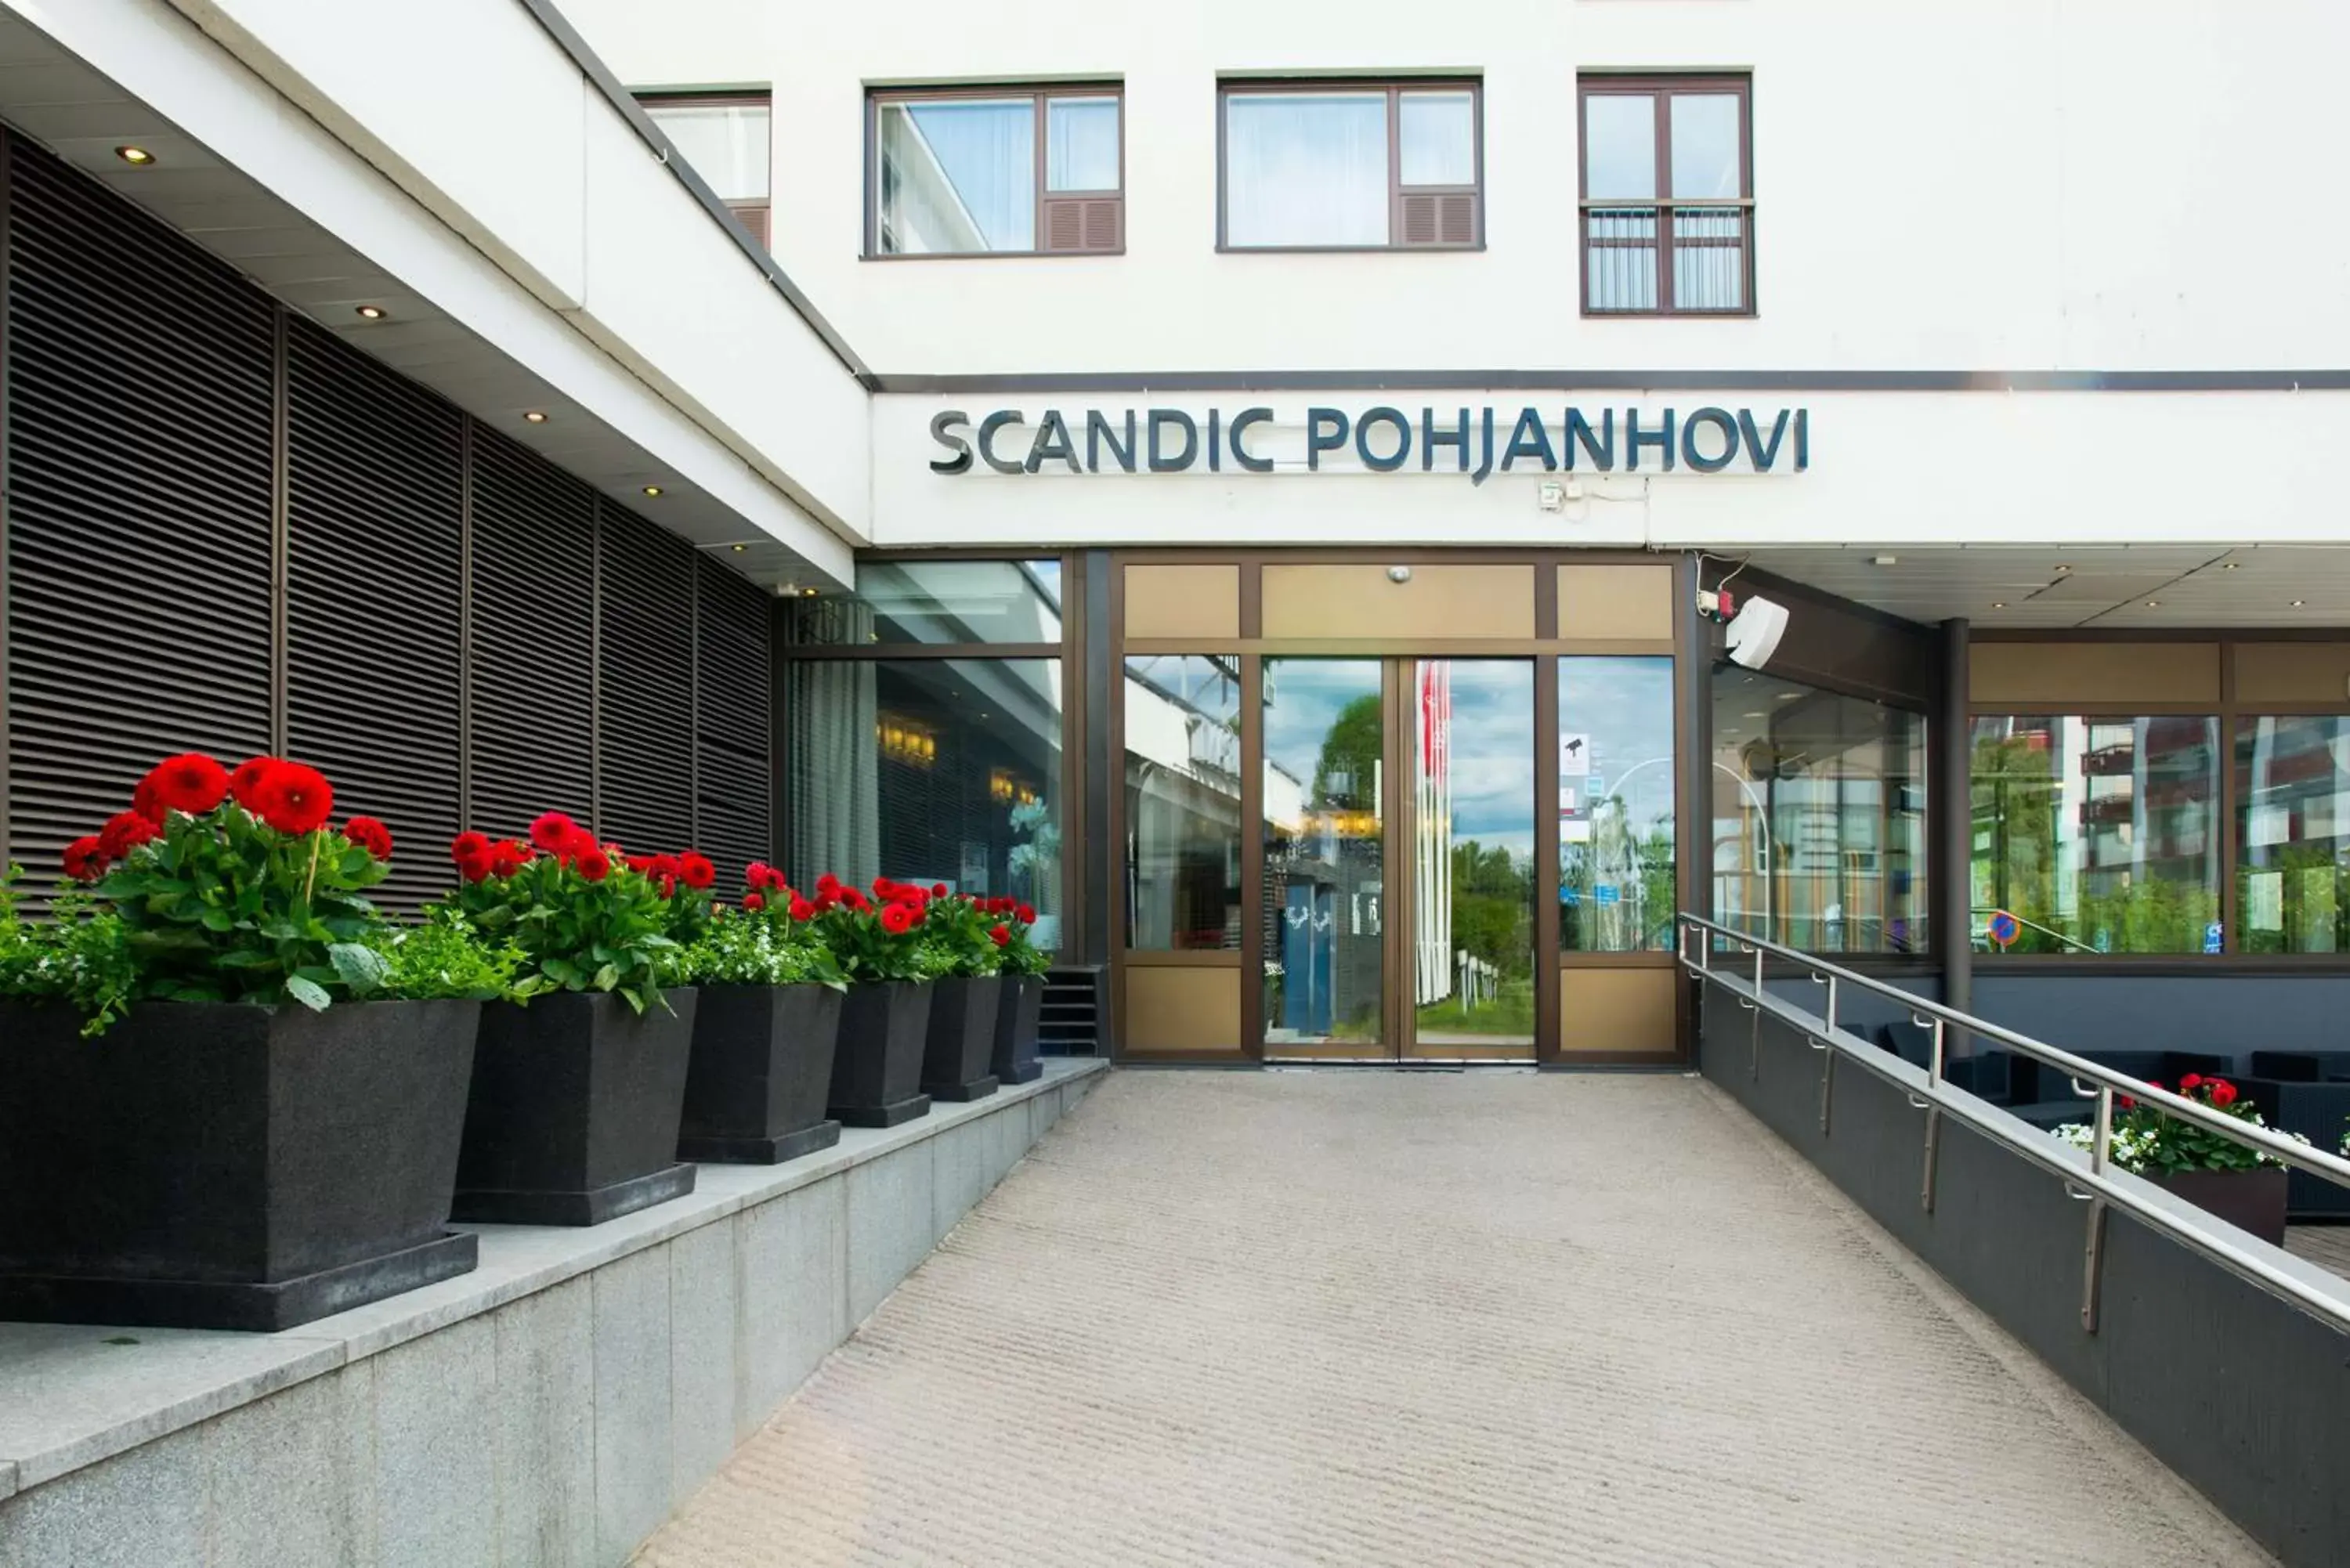 Property building in Scandic Pohjanhovi